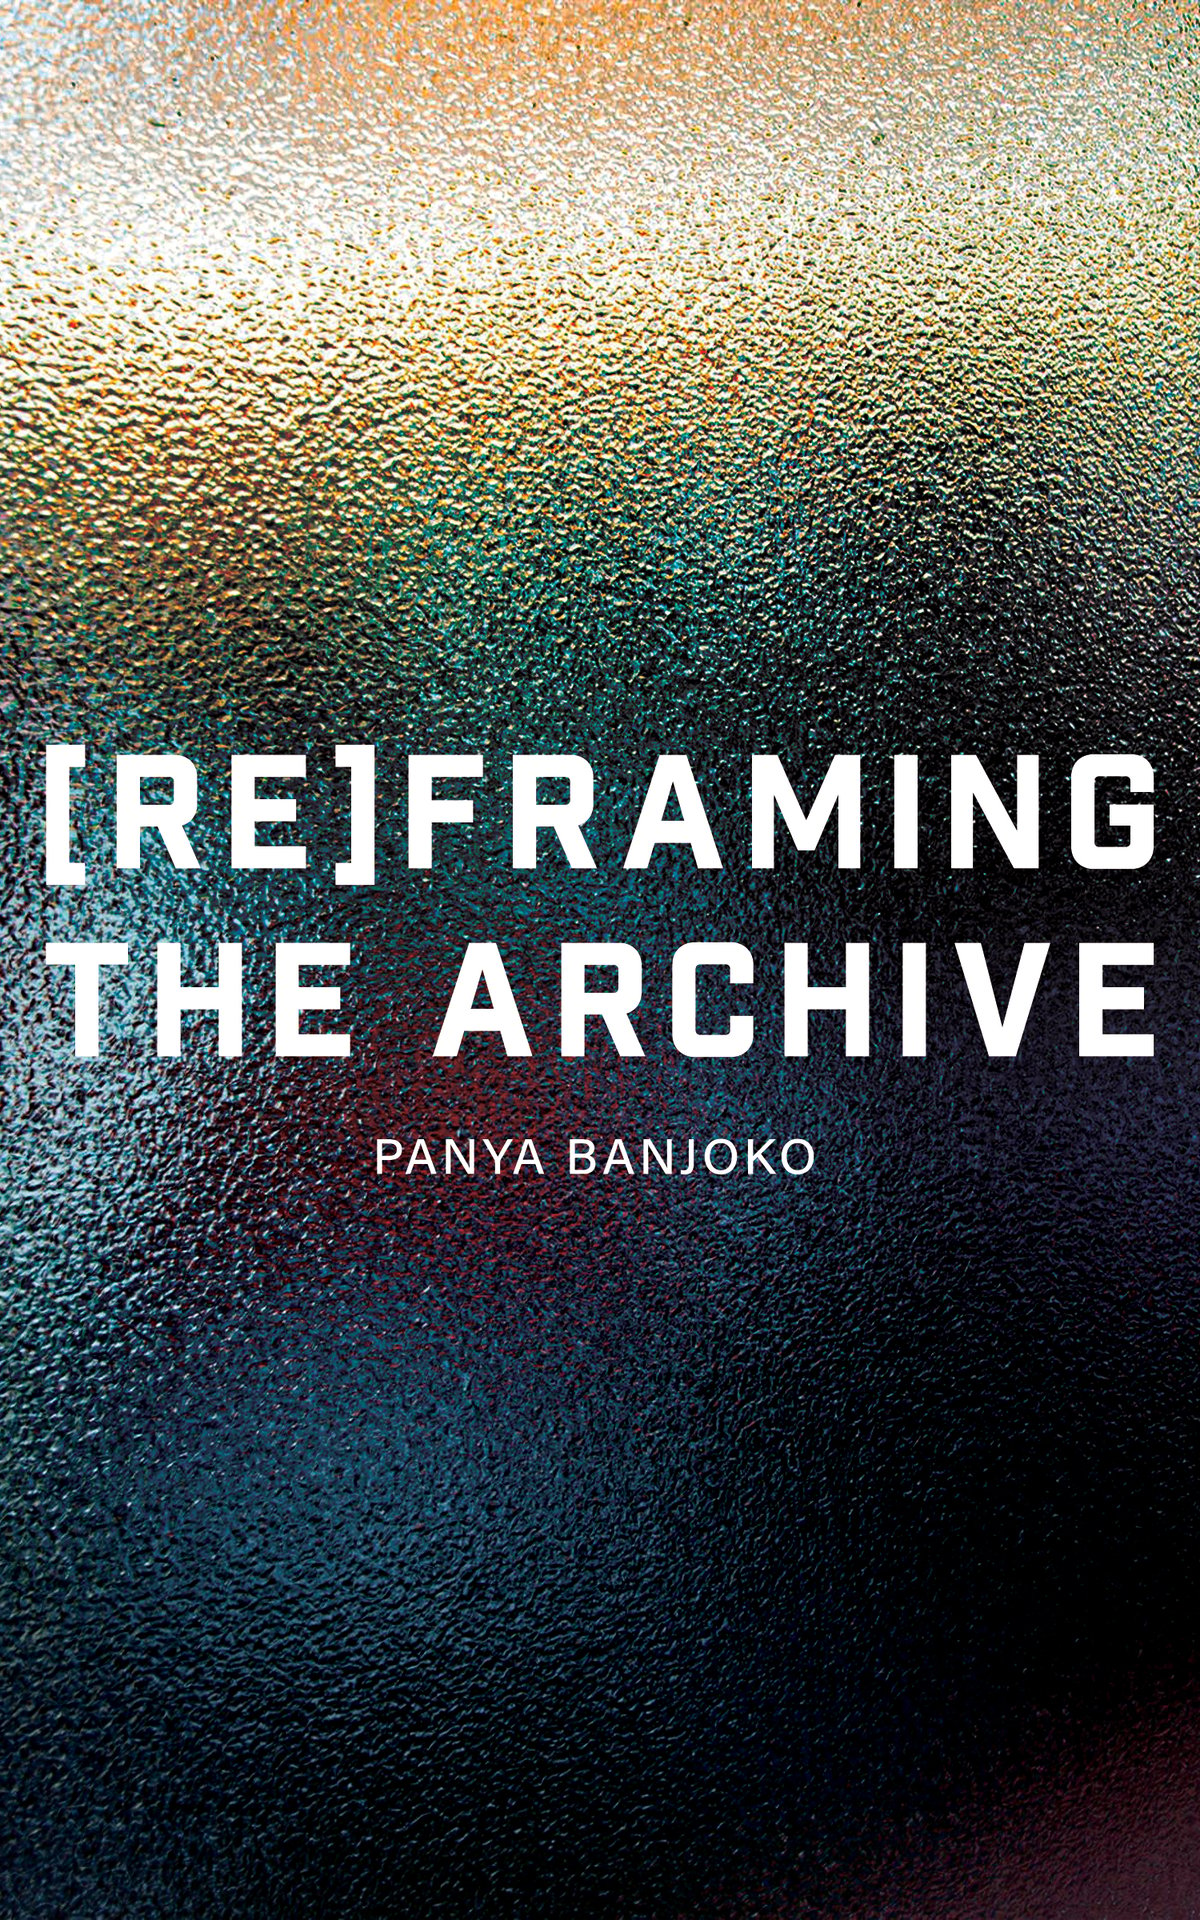 Image of (Re)framing the Archive by Panya Banjoko